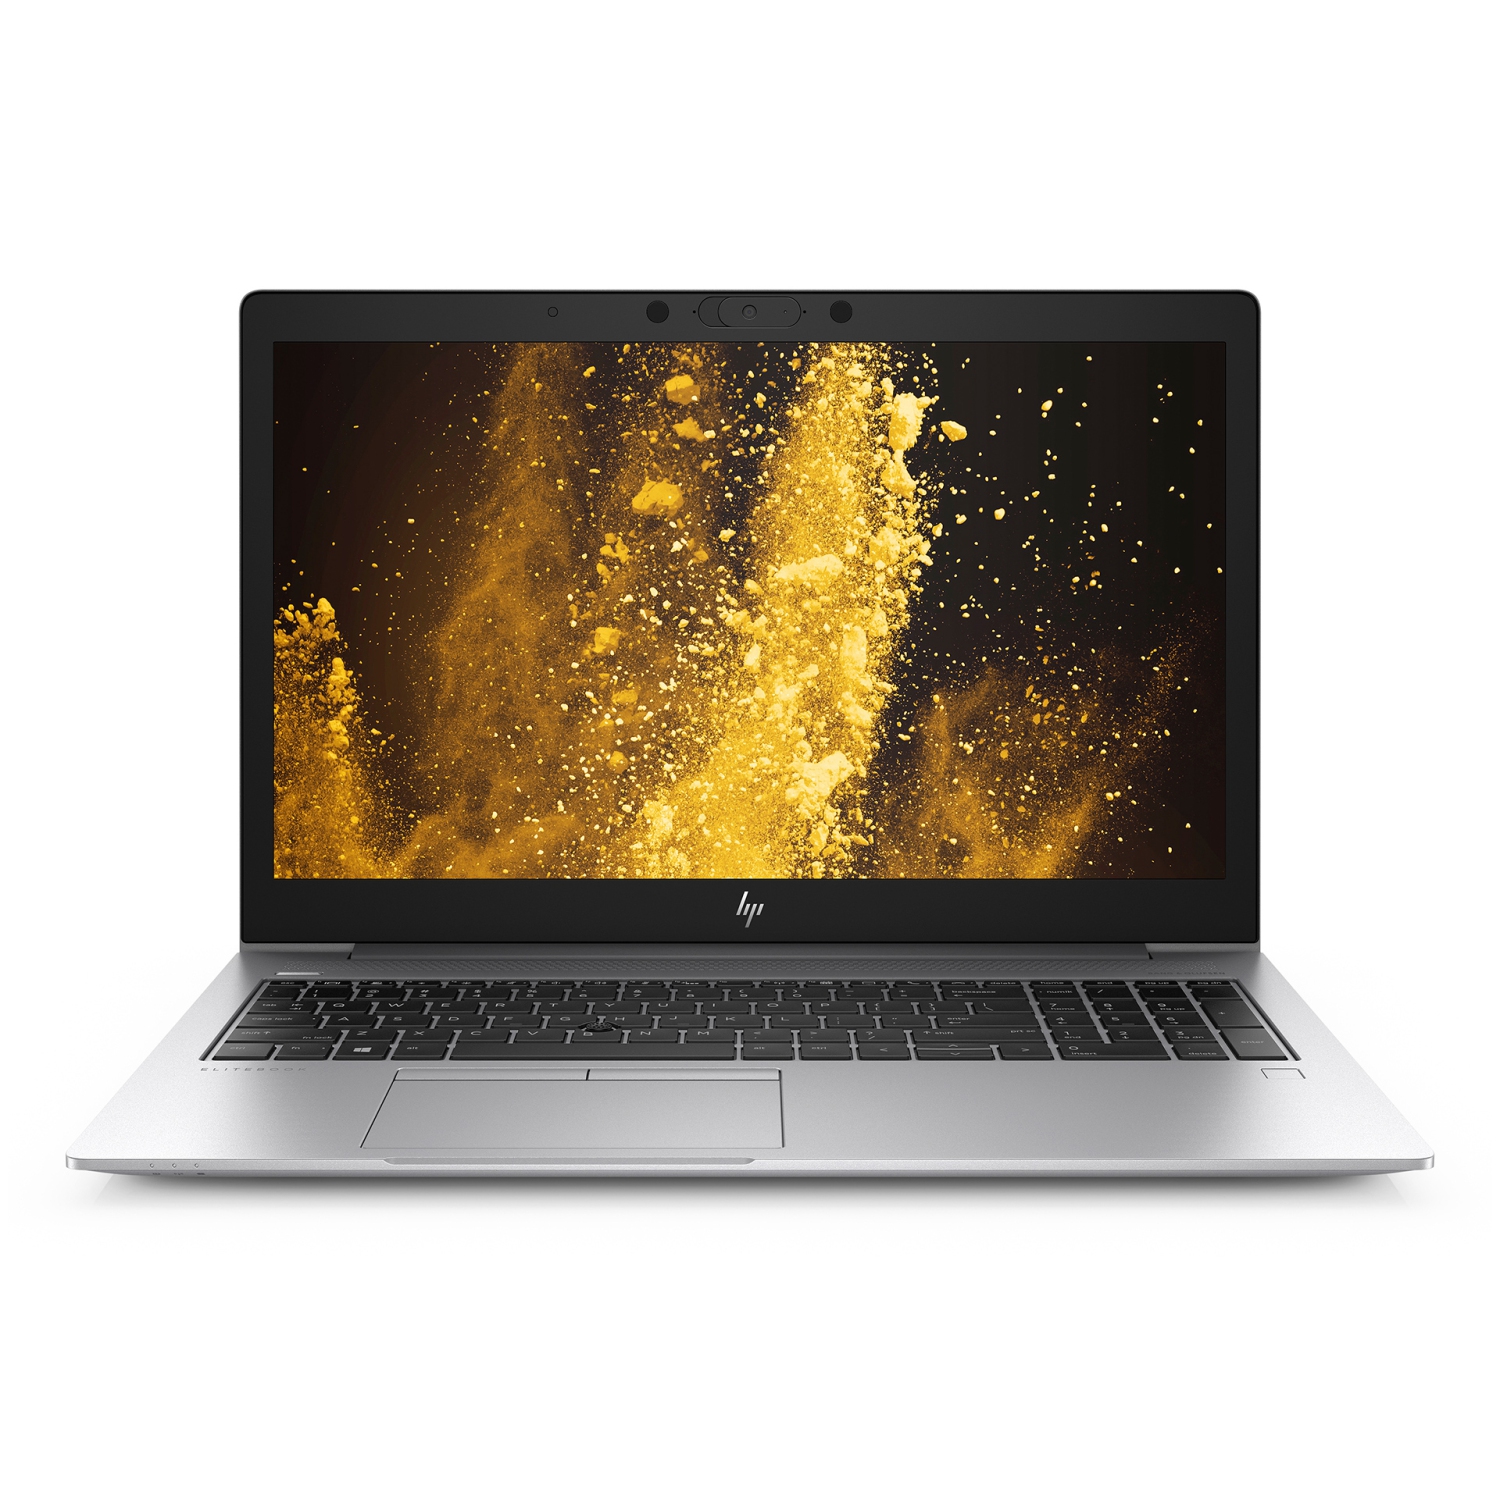 Refurbished (Good) - HP EliteBook 850 G6, 15.6" - 16GB RAM, SUPER FAST 1TB M.2 SSD, Intel Quad-Core 8th Gen i5 8365U, Full HD - 1920 x 1080 - Windows 10 Pro